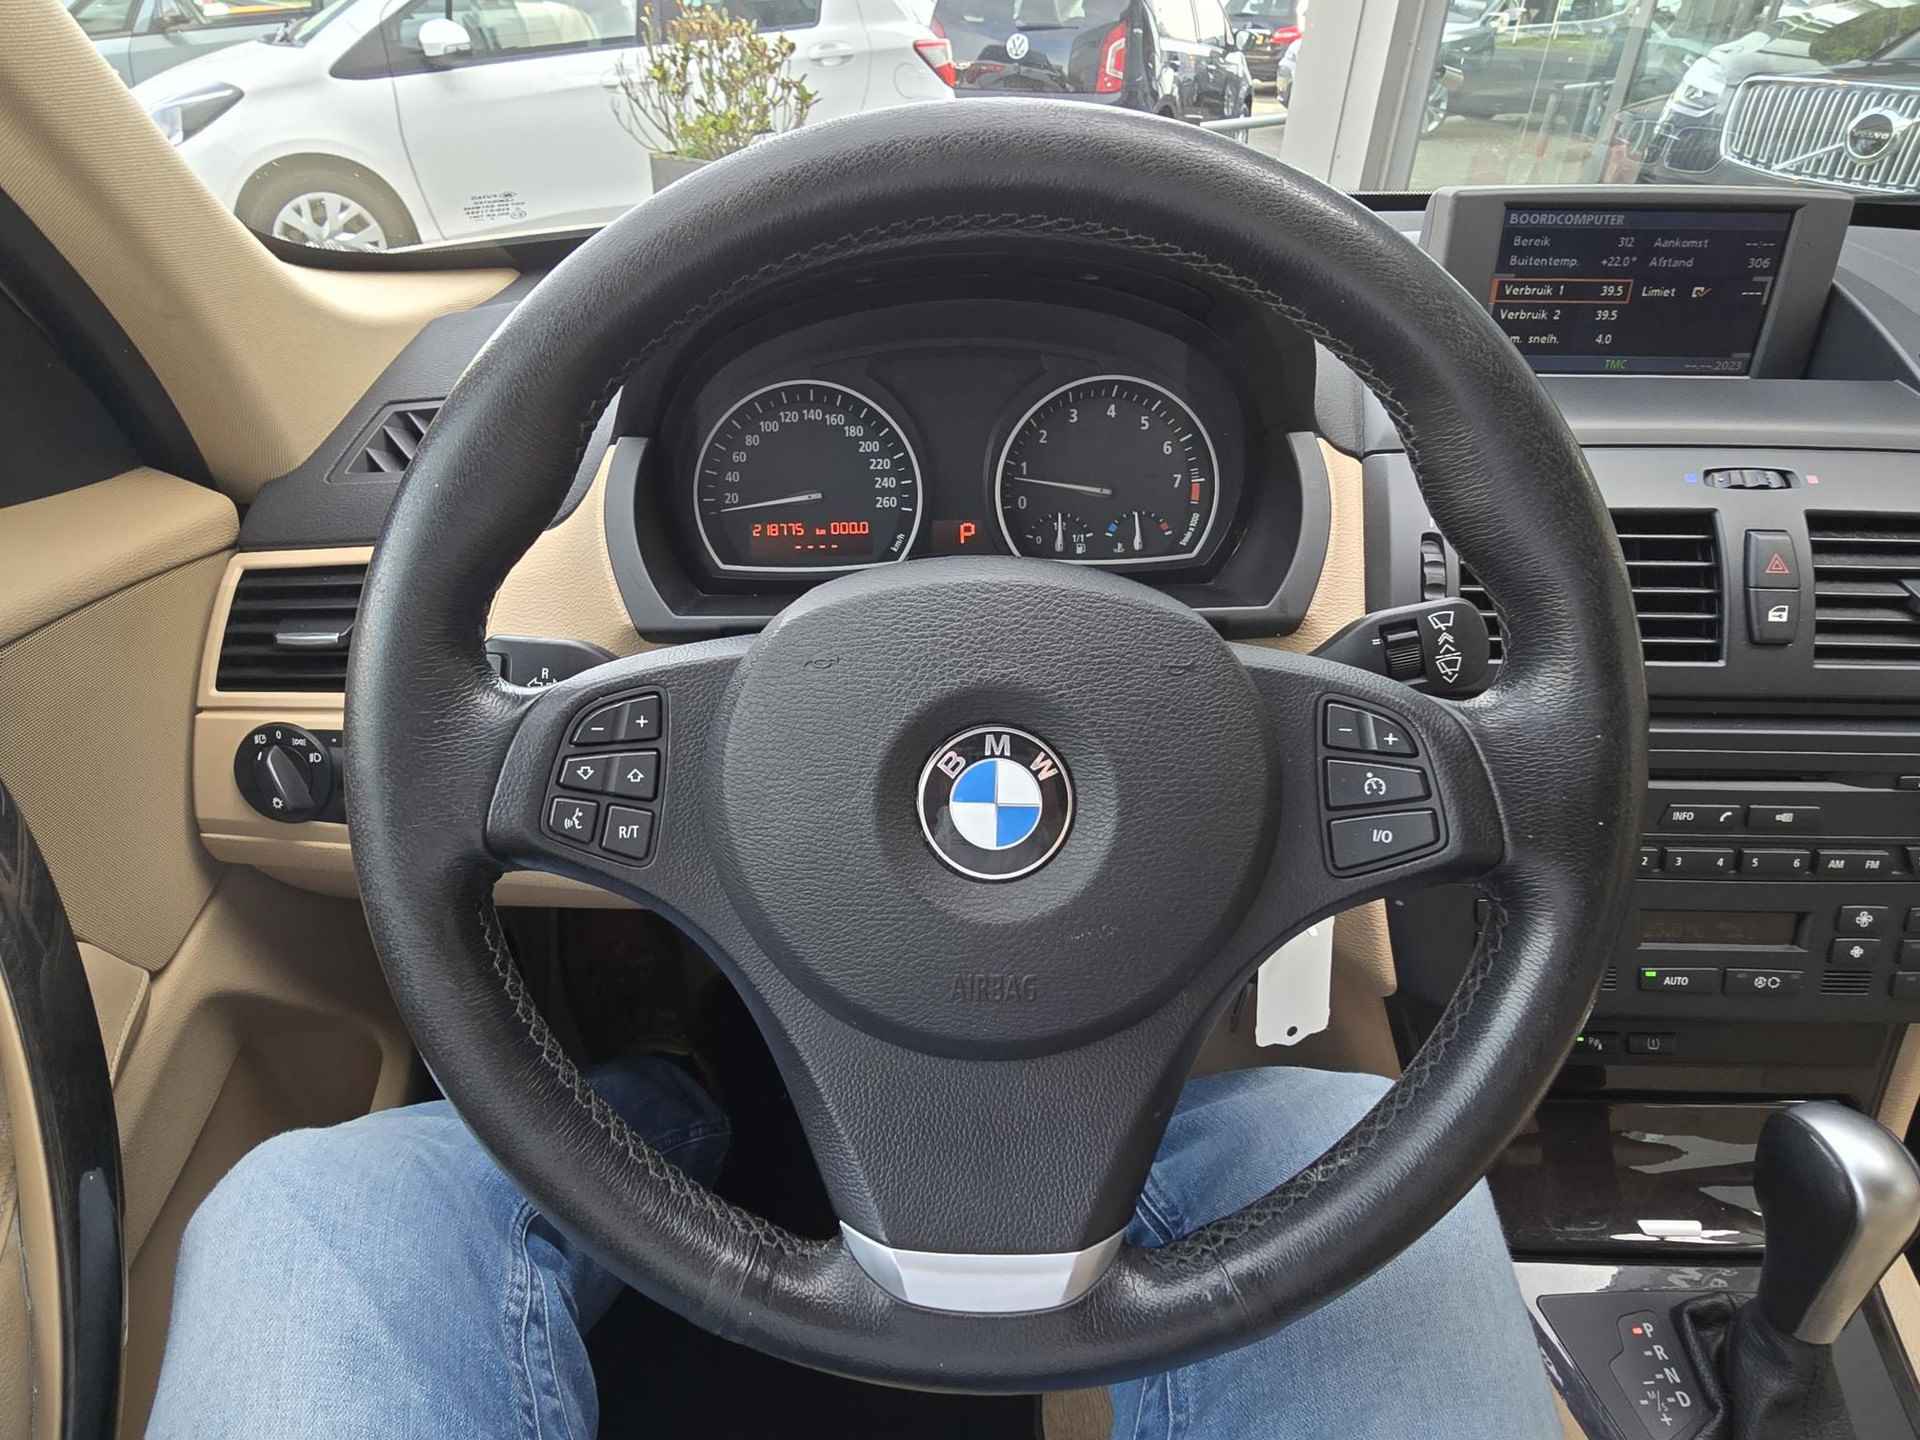 BMW X3 2.5si Executive "Youngtimer" - 18/52